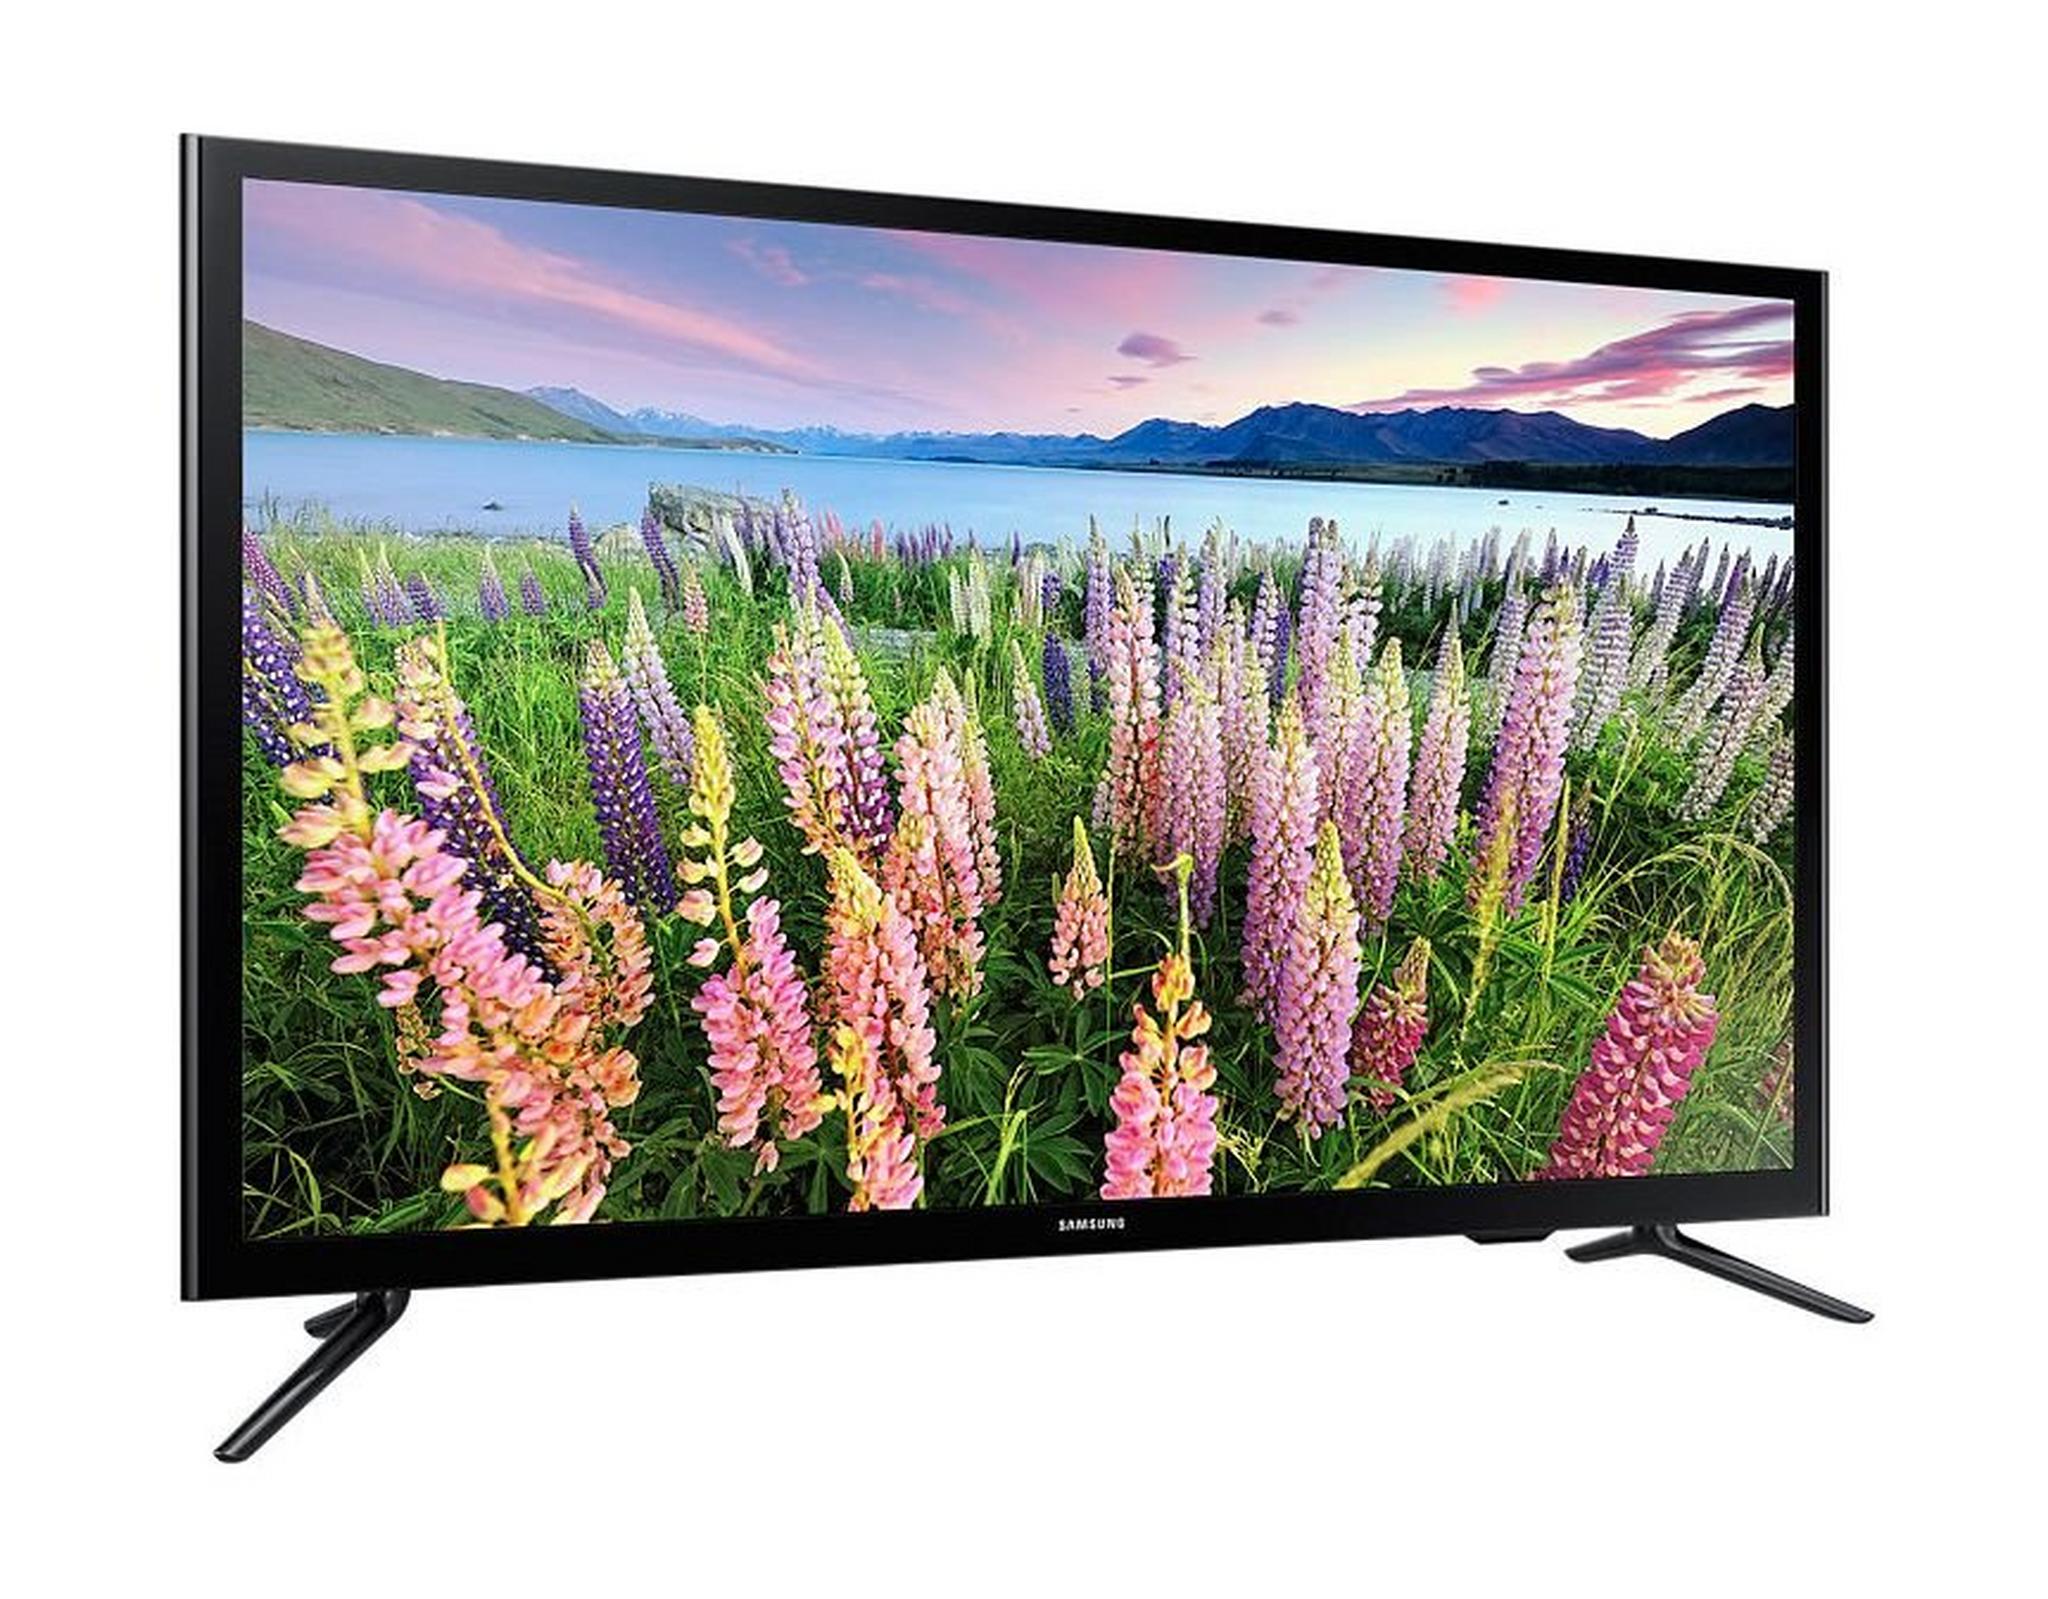 Samsung 48-inch Full HD (1080p) Smart LED TV - UA48J5200A